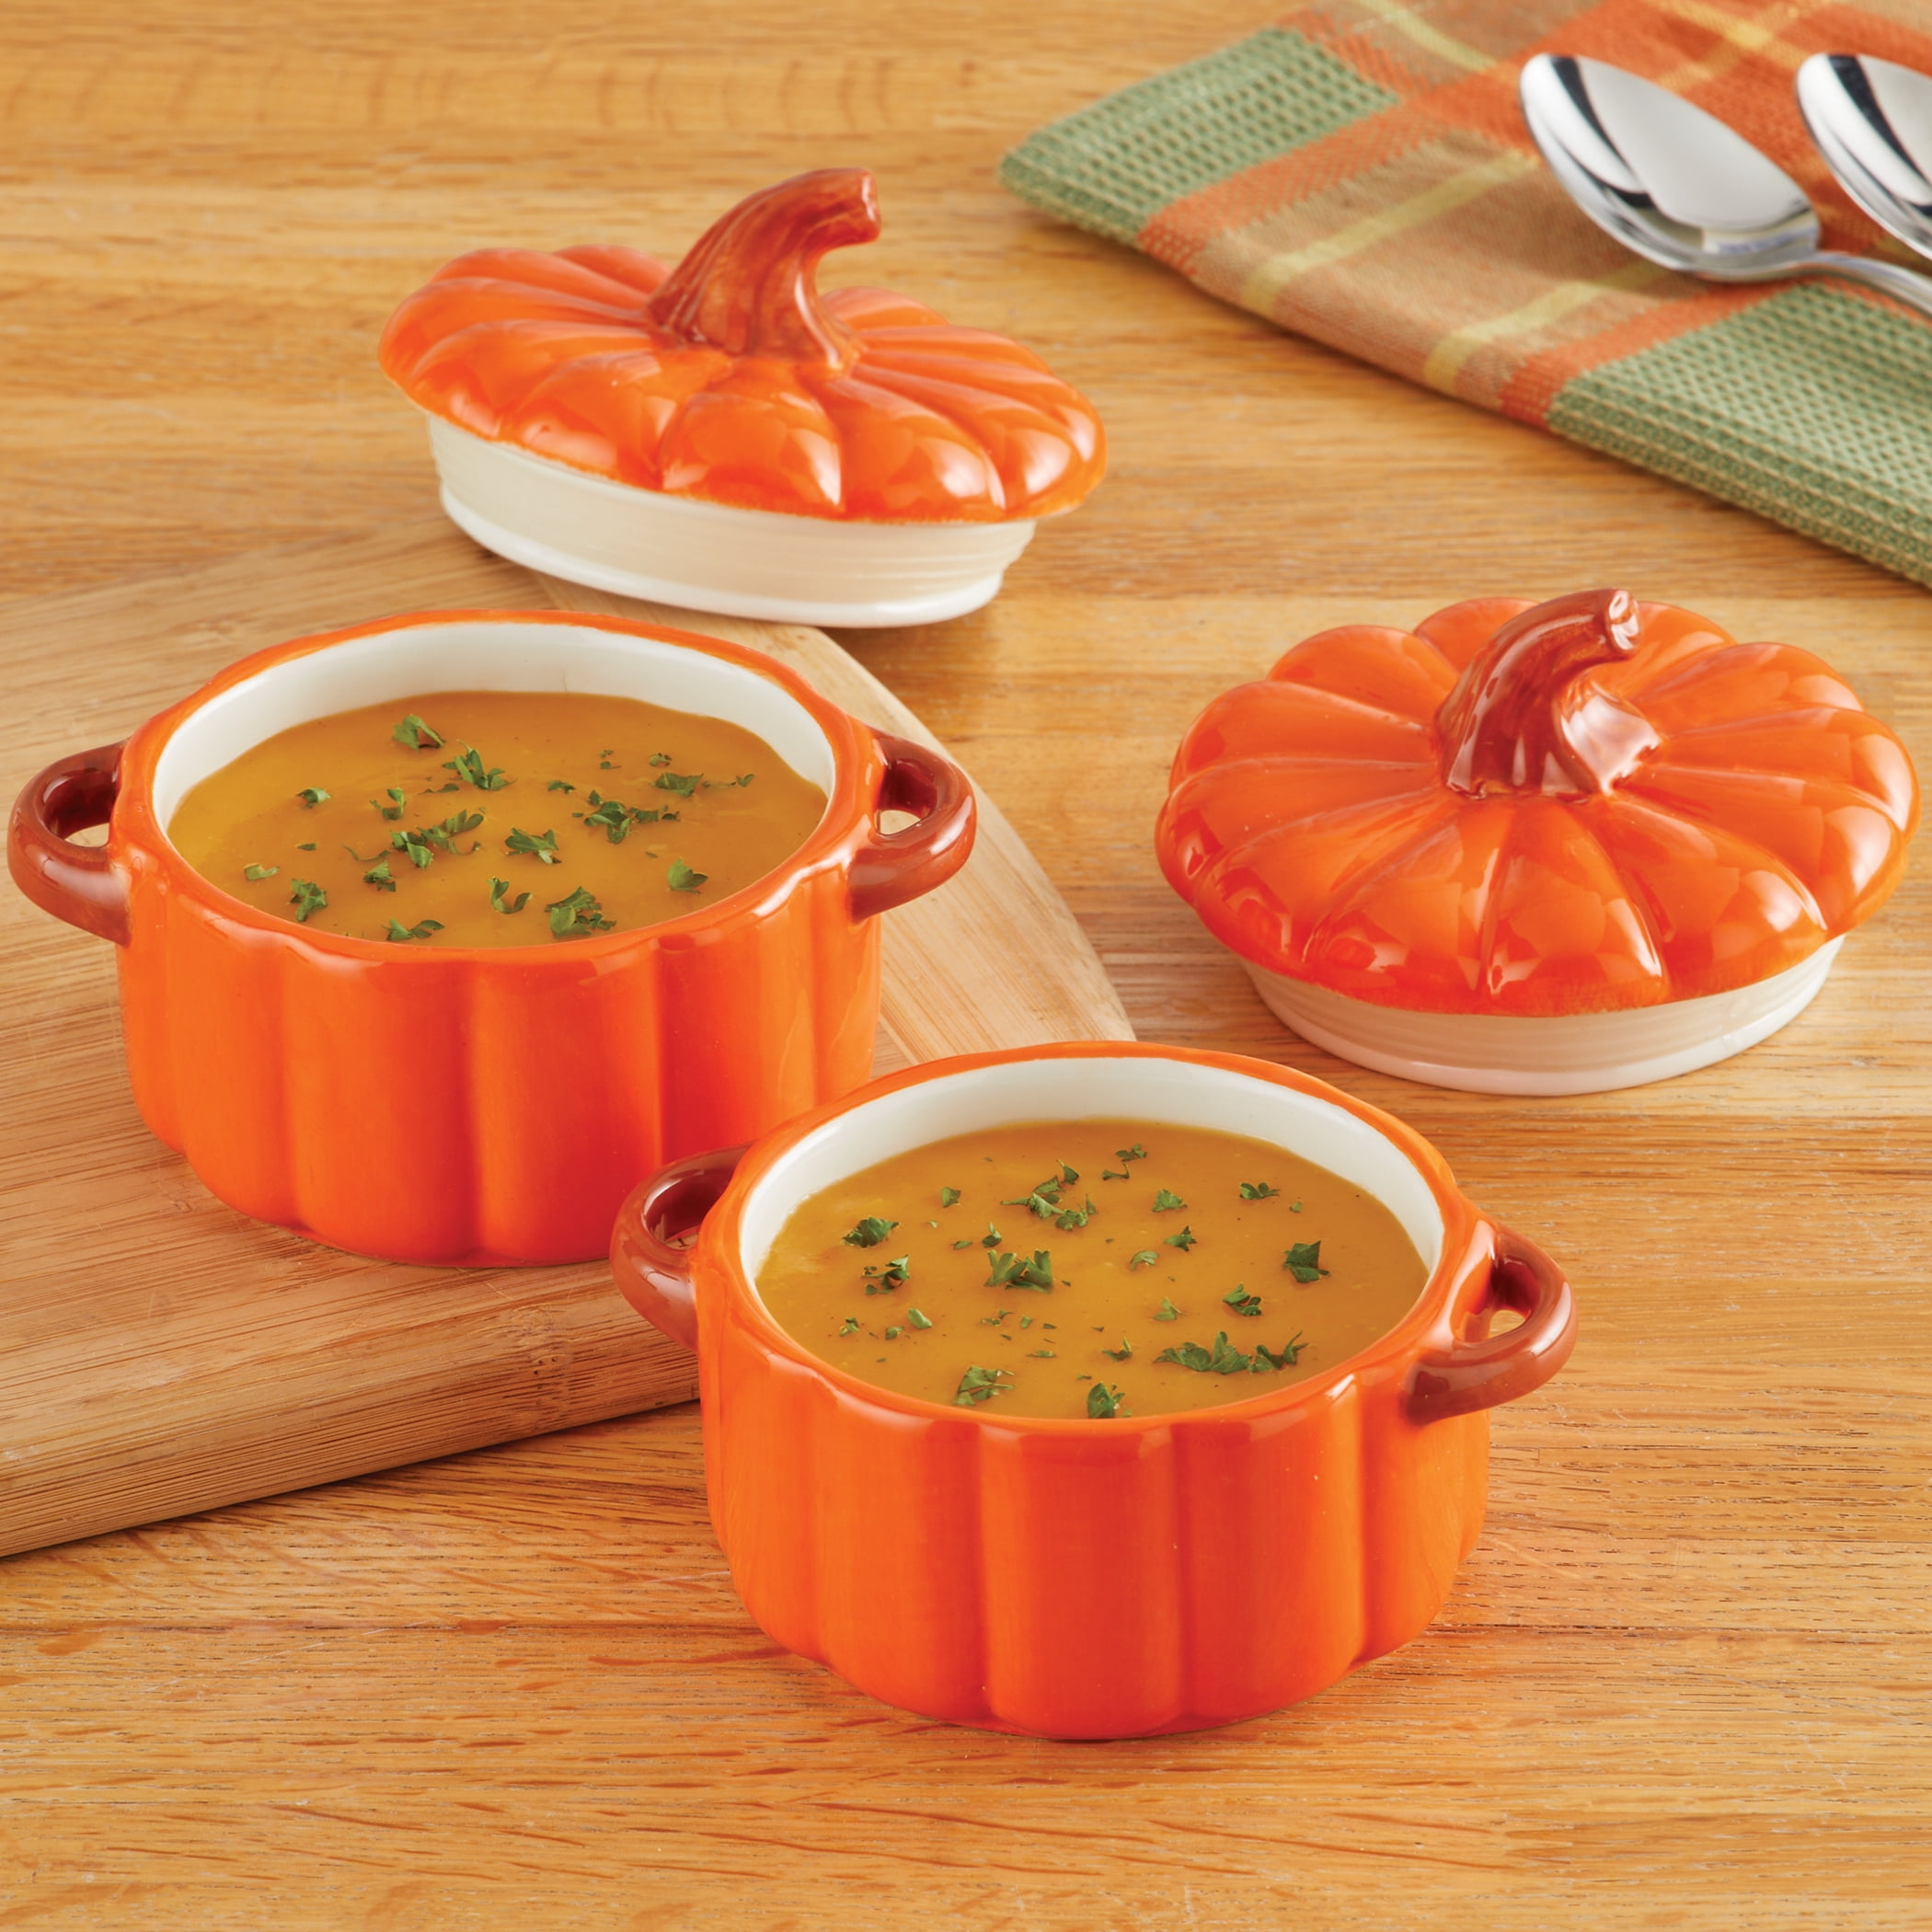 2 Bowls + 2 Spoons) Large Soup Bowls for Kitchen, pumpkin shape, 8